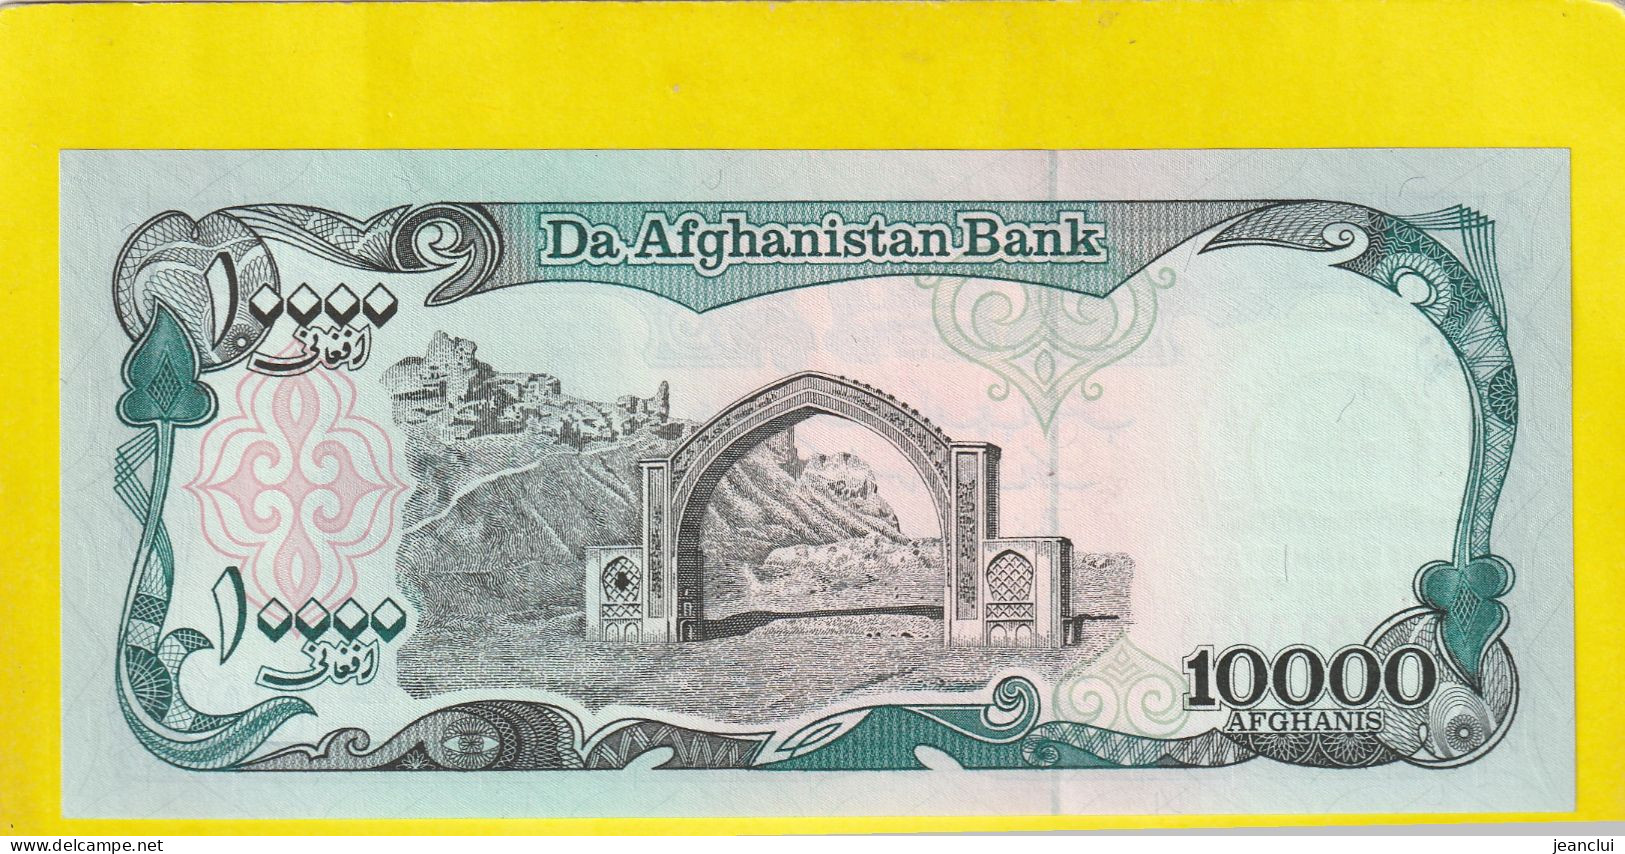 DA AFGHANISTAN BANK  .  10.000 AFGHANIS  .  2 SCANNES  .  ETAT LUXE / UNC - Afghanistán